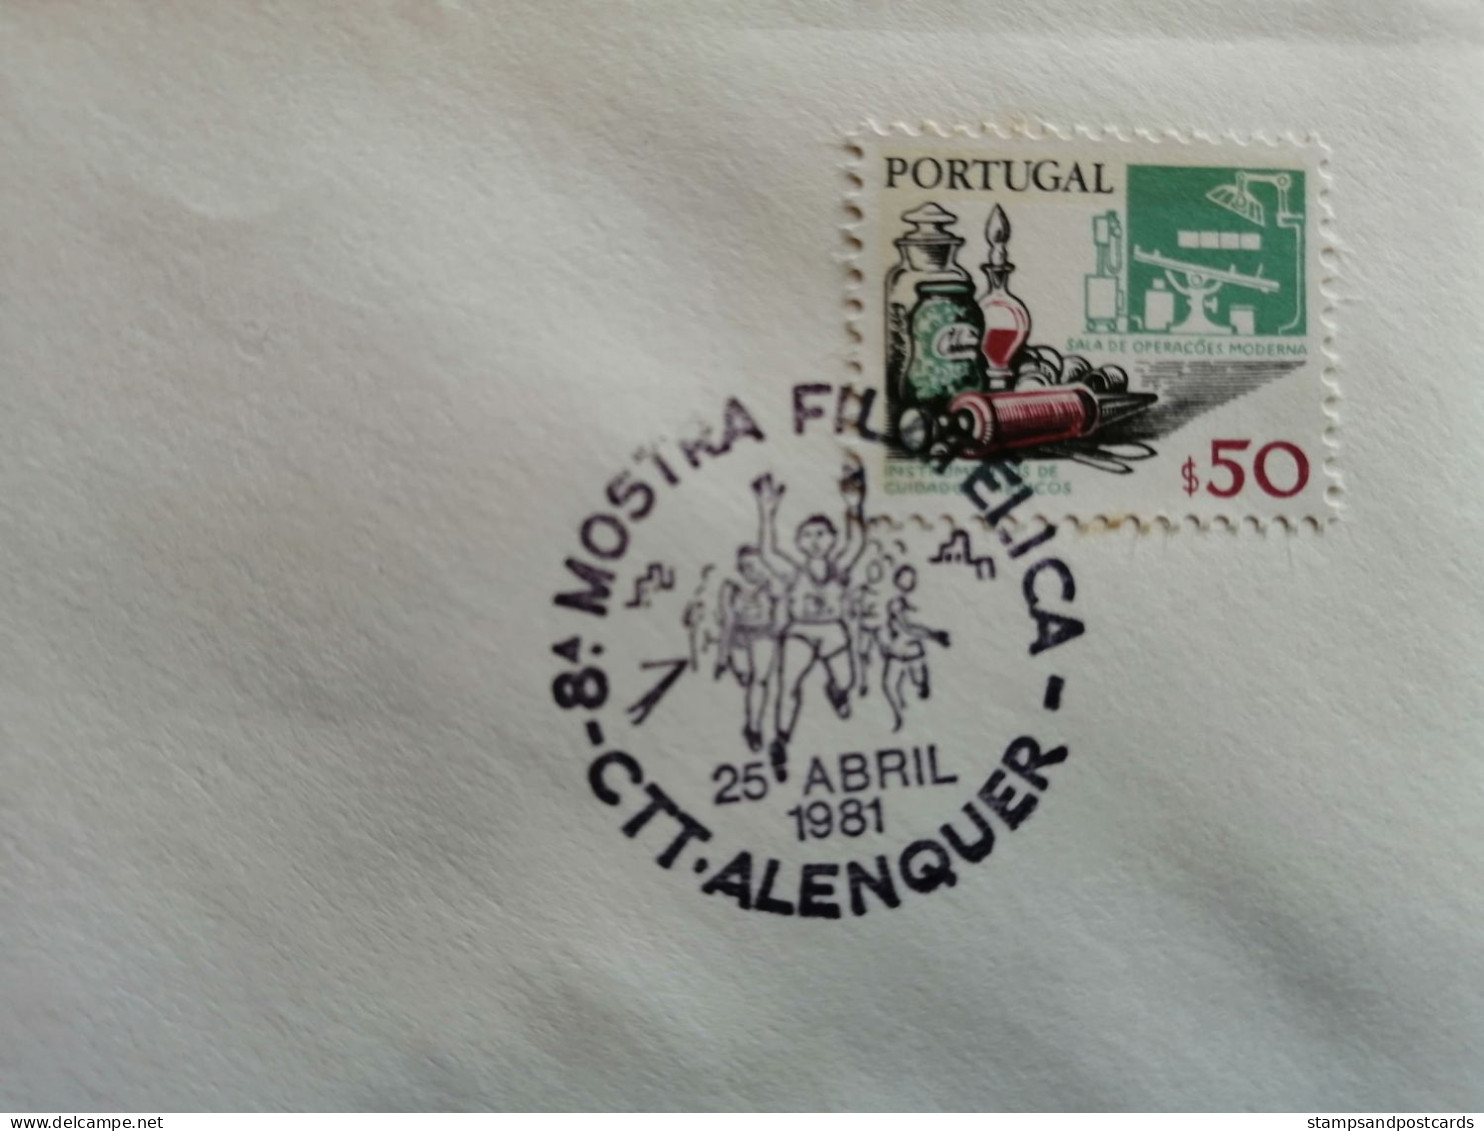 Portugal Cachet Commémoratif Expo Philatelique Alenquer 1981 Révolution Des Oeillets 25 Avril Event Postmark - Maschinenstempel (Werbestempel)